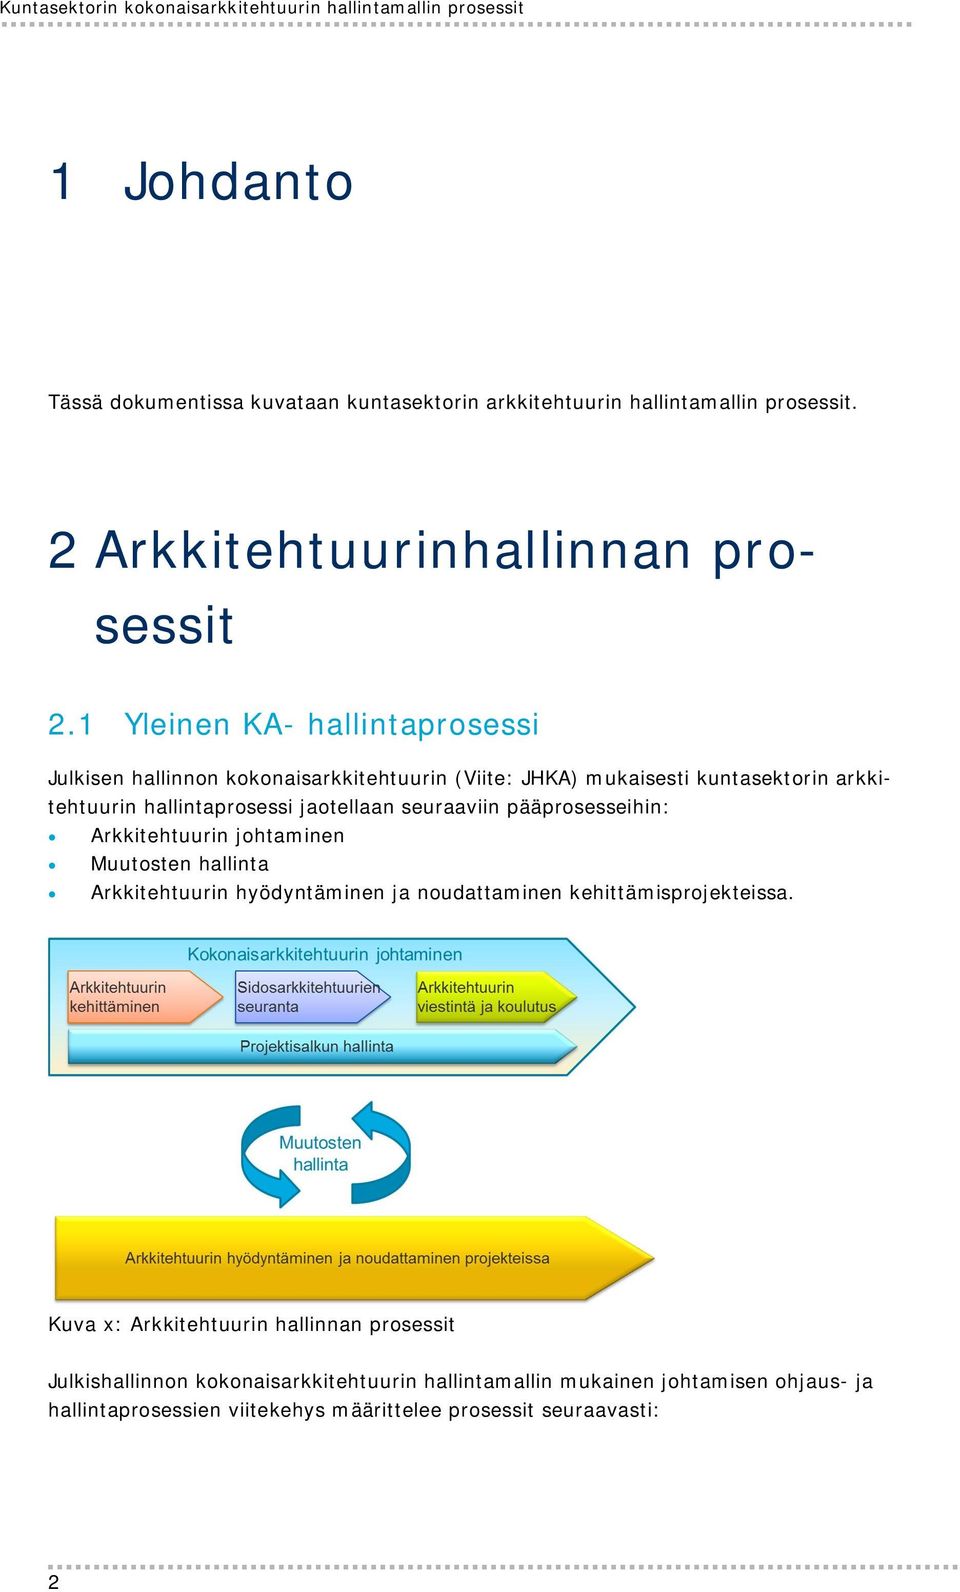 1 Yleinen KA- hallintaprosessi Julkisen hallinnon kokonaisarkkitehtuurin (Viite: JHKA) mukaisesti kuntasektorin arkkitehtuurin hallintaprosessi jaotellaan seuraaviin